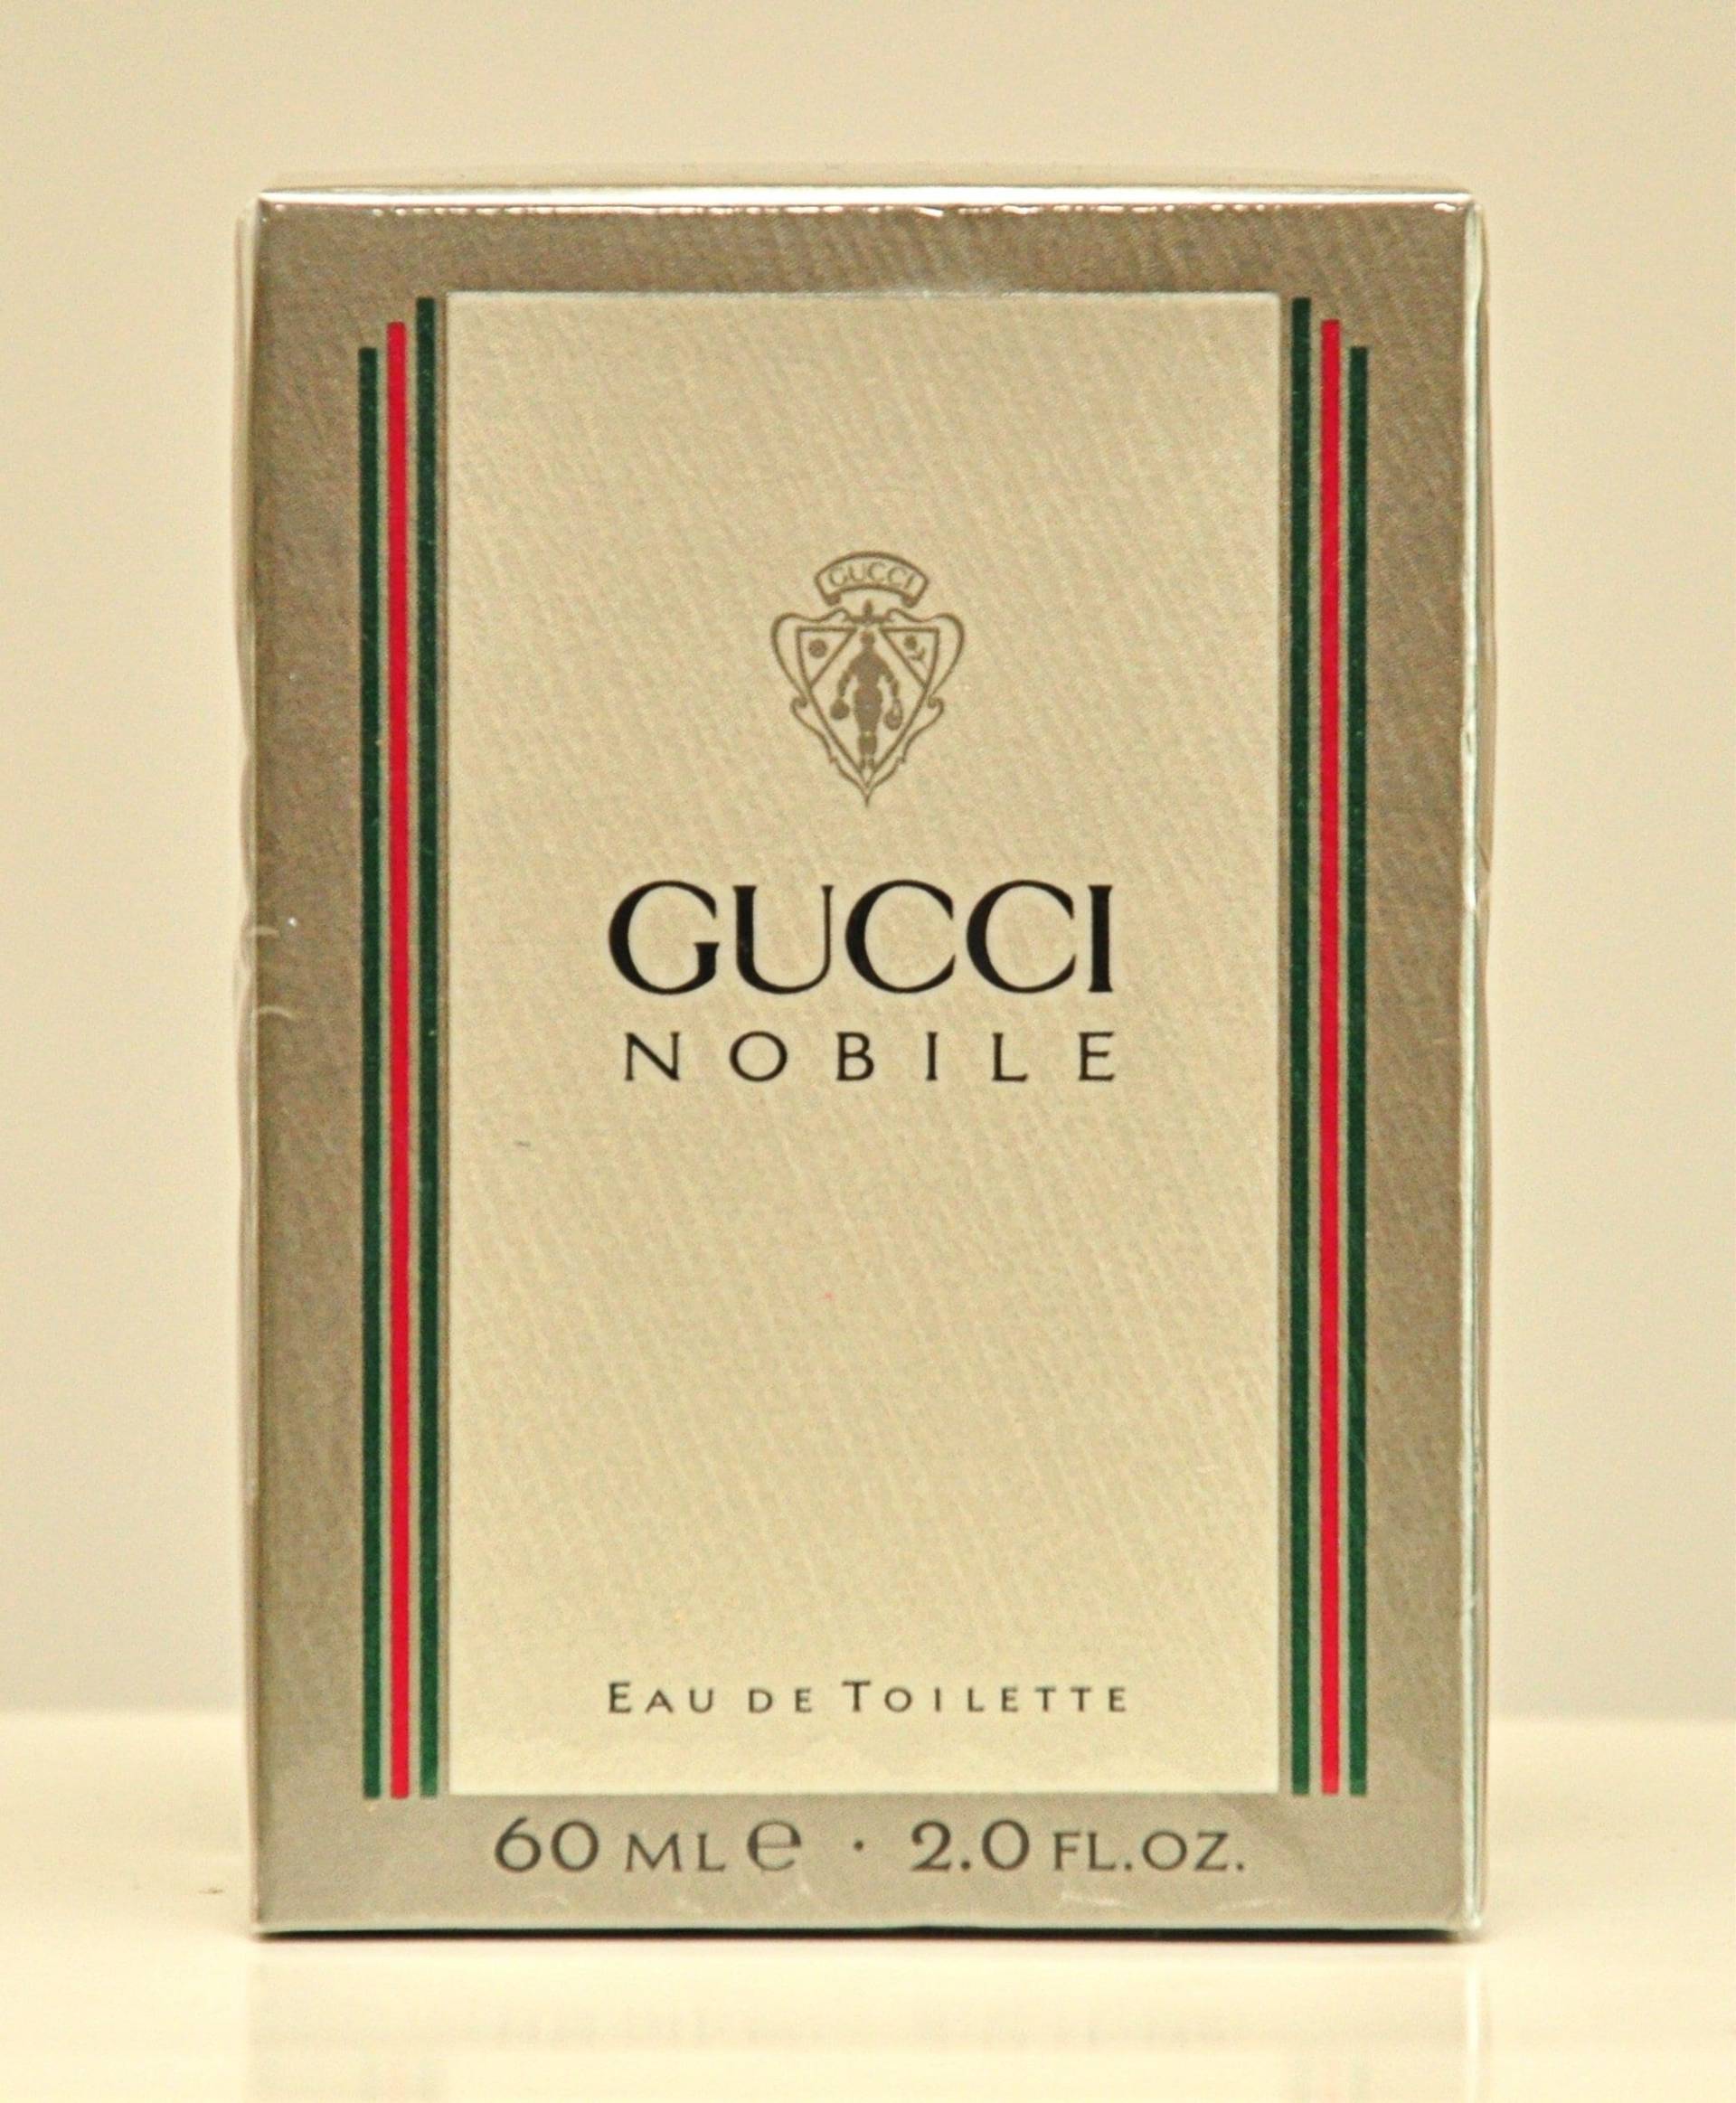 Gucci Nobile Eau De Toilette Edt 60Ml Splash Non Spray Parfüm Mann Sehr Selten Vintage 1988 Neu Versiegelt von YourVintagePerfume